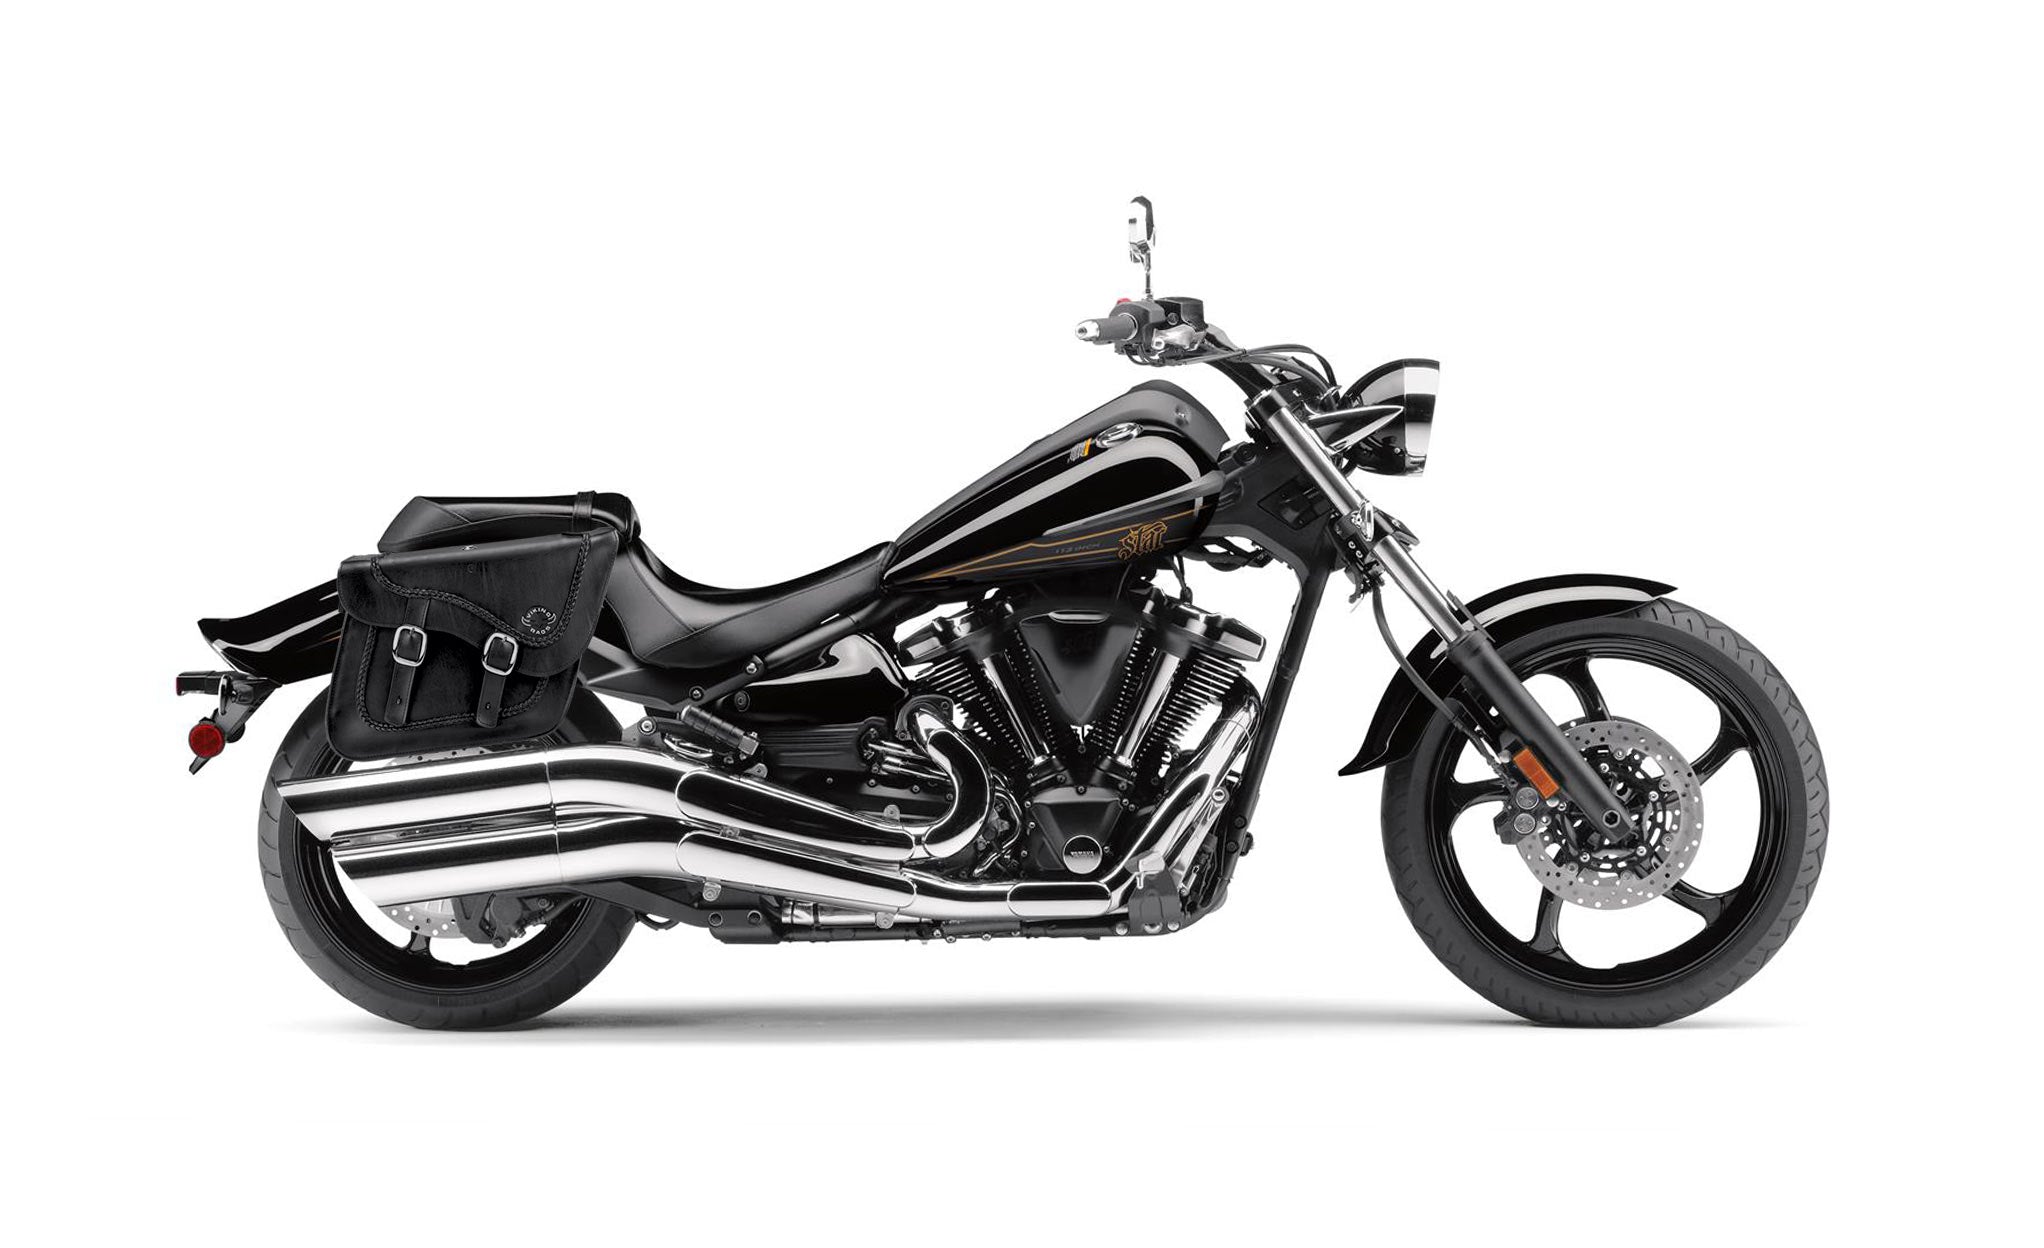 Viking Americano Yamaha Raider Braided Large Leather Motorcycle Saddlebags on Bike Photo @expand